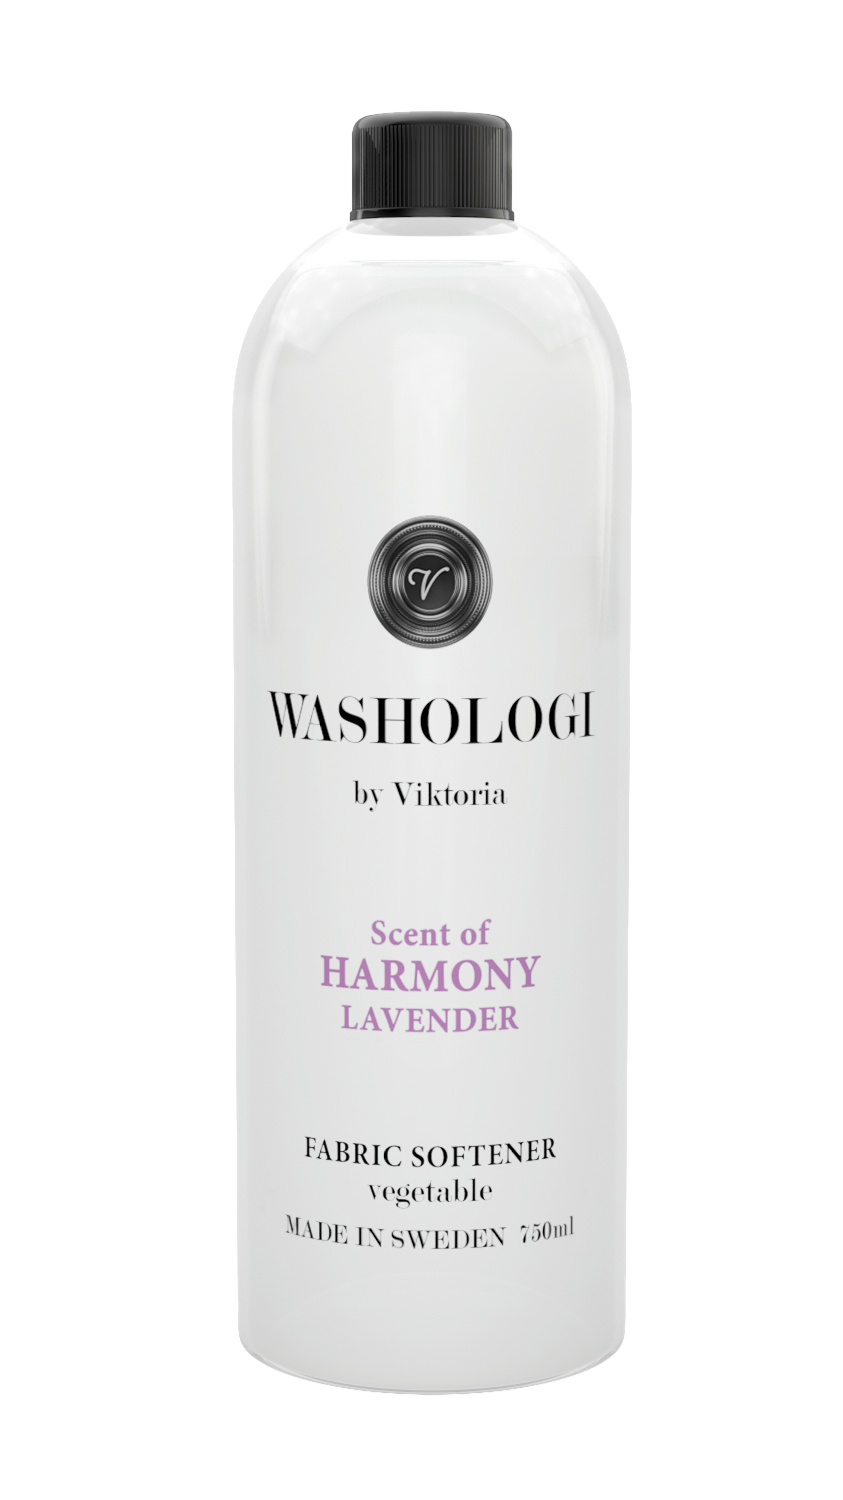 Washologi Fabric Softener Harmony 750ml Bottle Packshot White Background